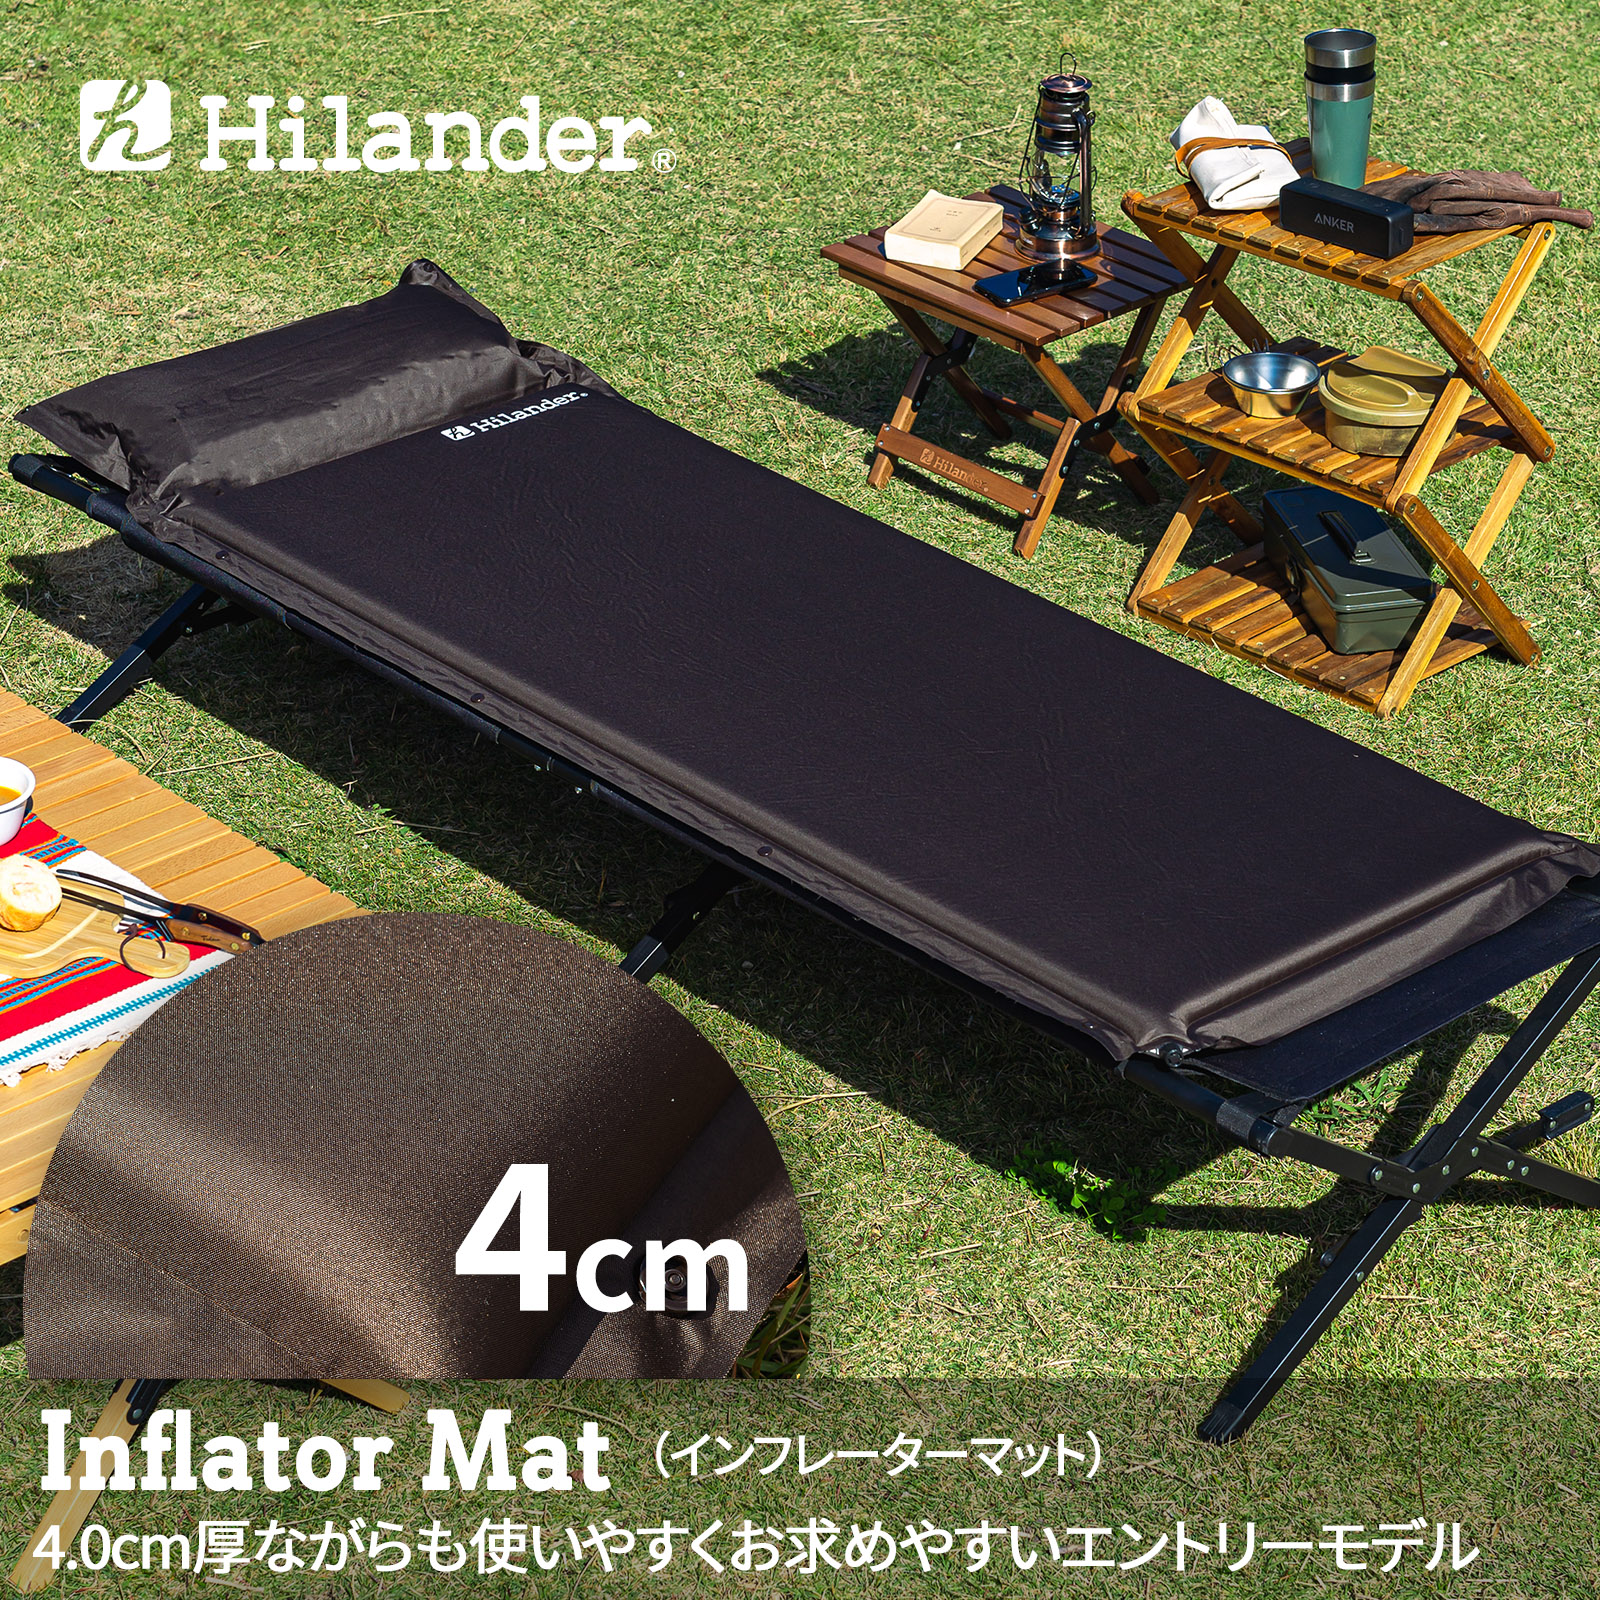 Hilander(ハイランダー) インフレーターマット(枕付きタイプ) 4.0cm  シングル ブラウン UK-8